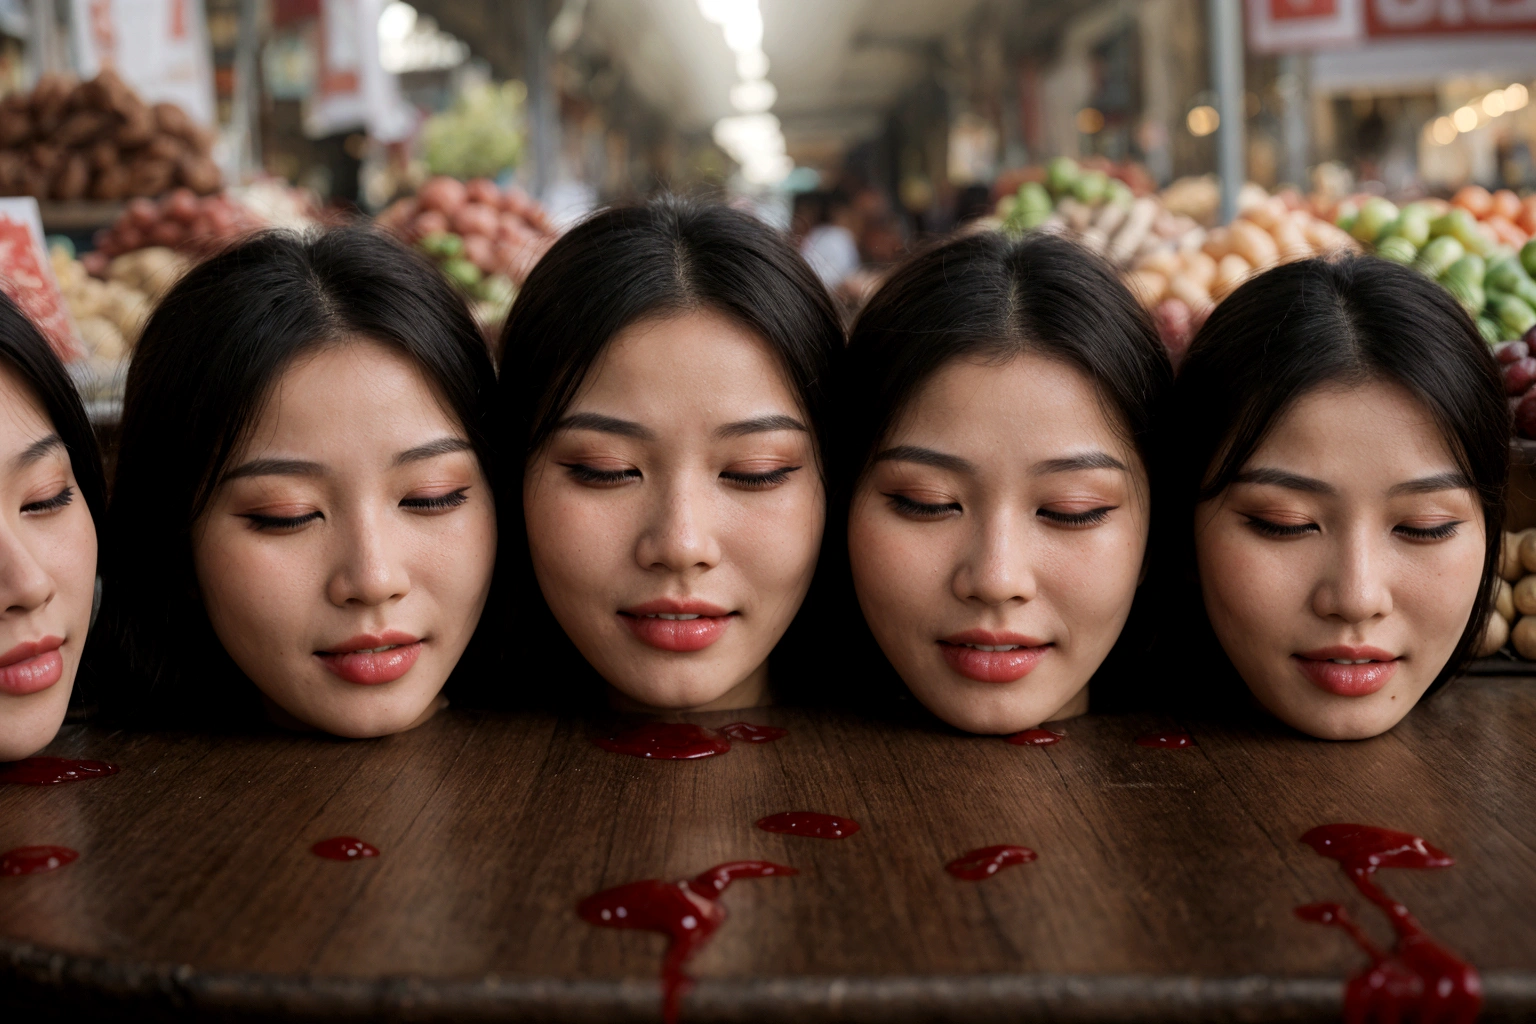 数名美丽女子的头颅, 在桌子上, in a 公共市场, 满是鲜血, 血液流动, ((闭上眼睛)), 流血的, 真实感, 4k, 尼康, 恐怖, 公共市场, 美丽的亚洲面孔, 包裹塑料,